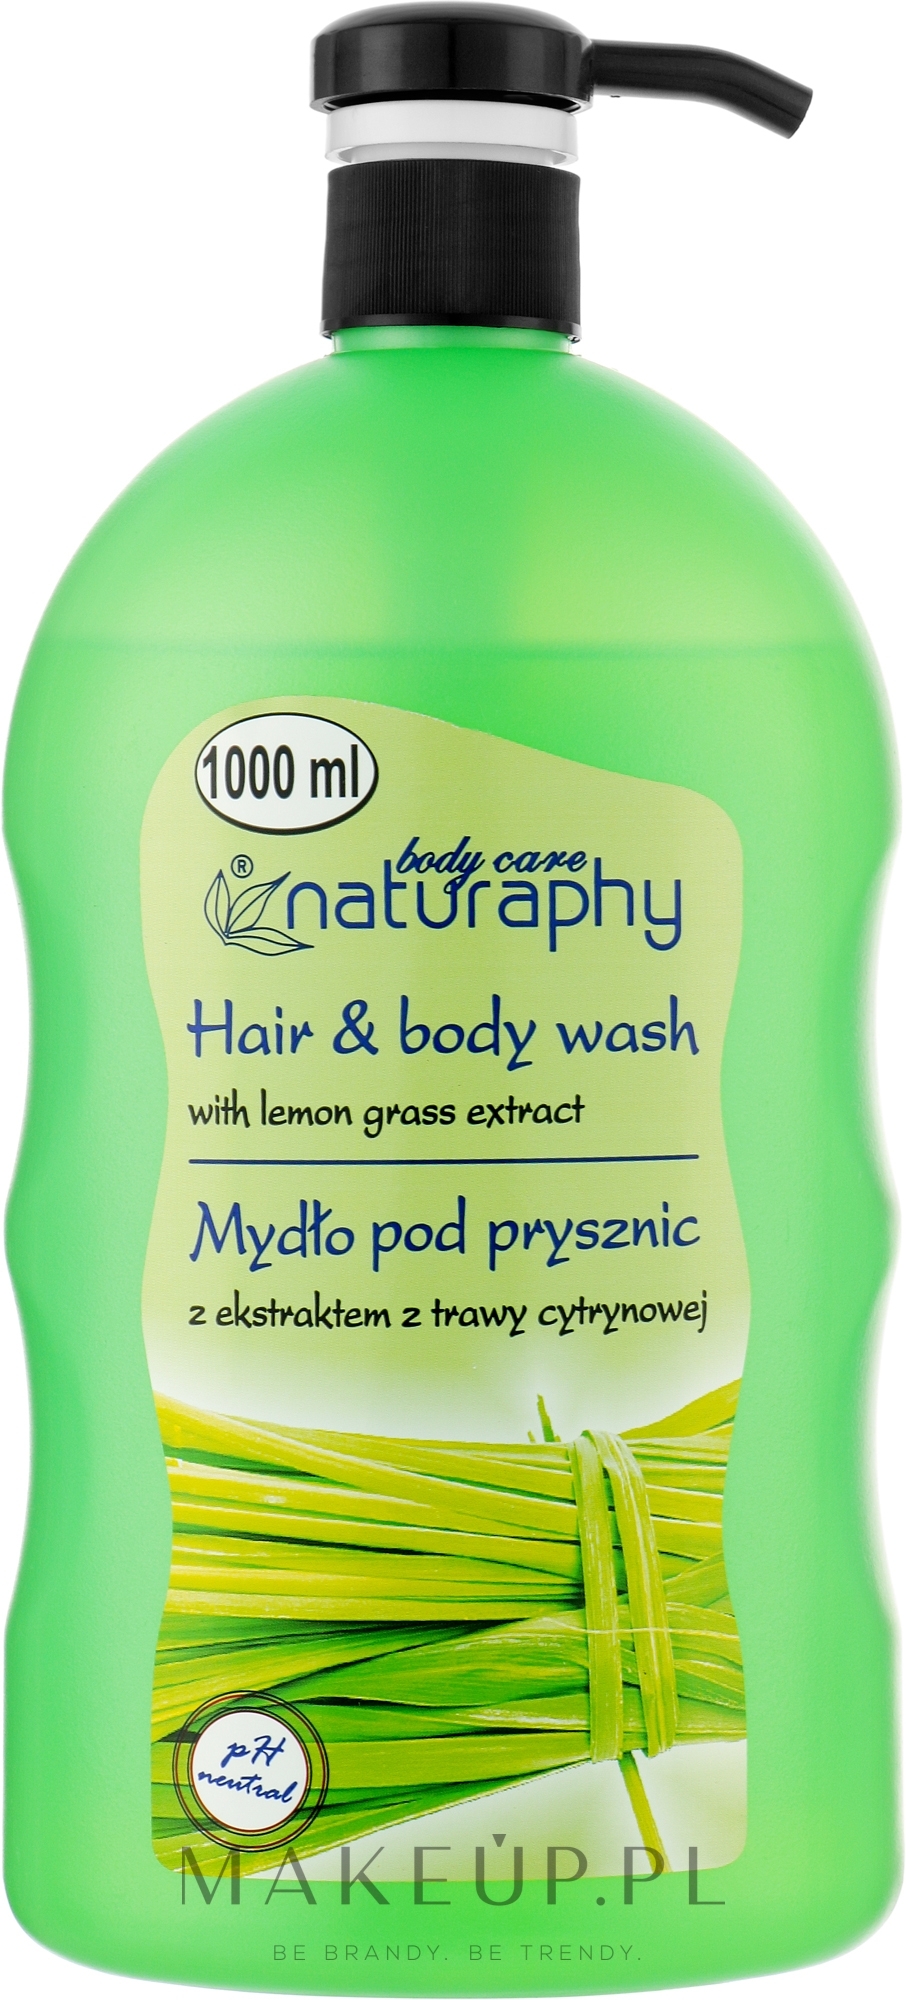 Mydło pod prysznic do włosów i ciała z ekstraktem z trawy cytrynowej - Naturaphy — Zdjęcie 1000 ml